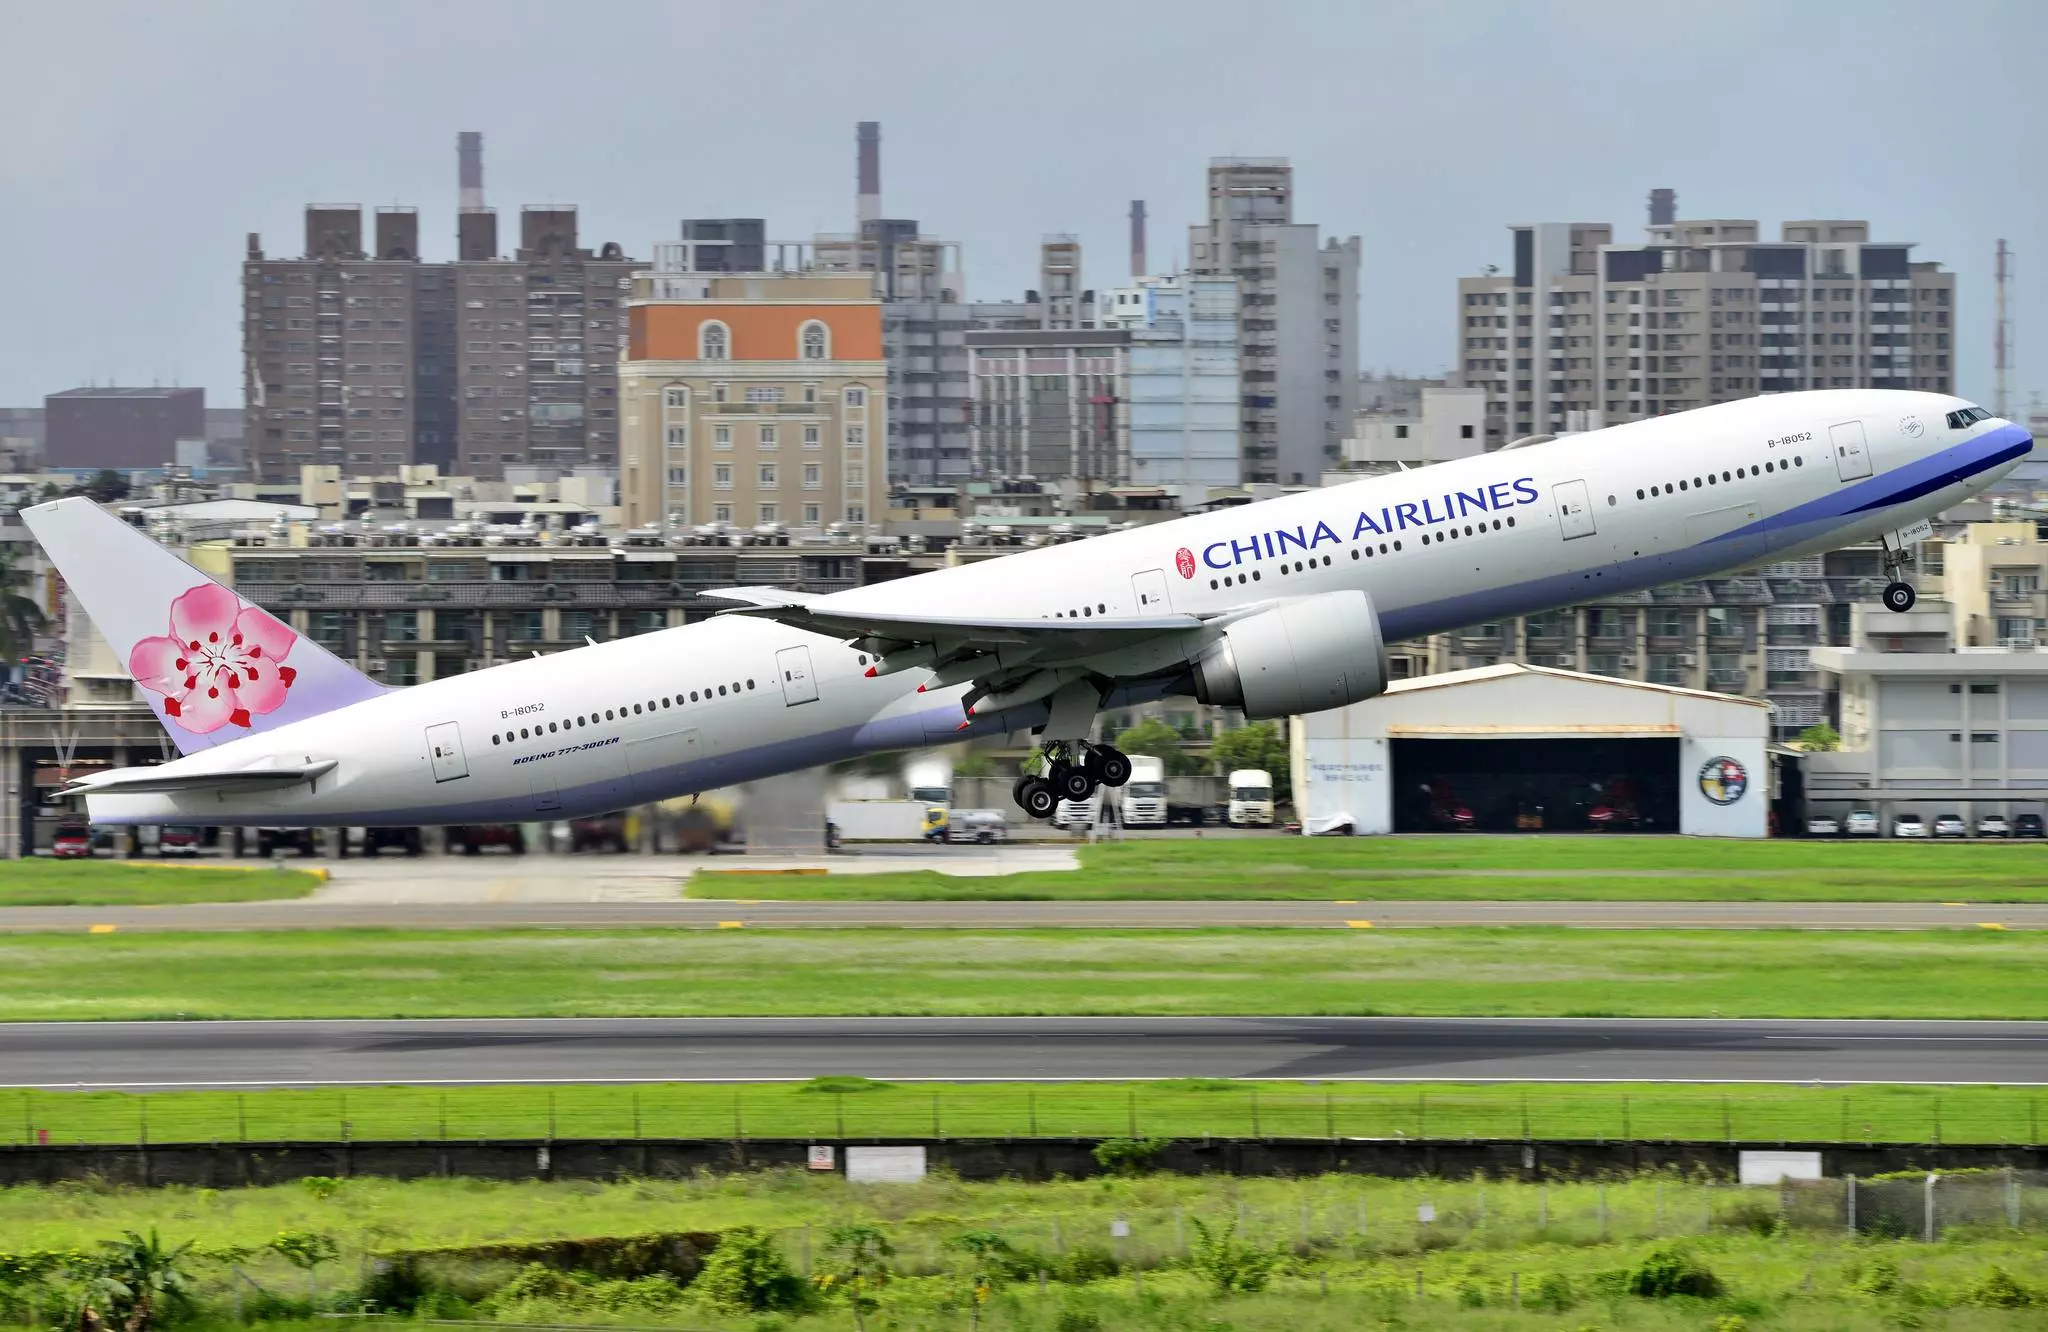 China airlines (чайна/чина эйрлайнс): описание авиакомпании, флот используемых самолетов, направления перелетов и классы обслуживания